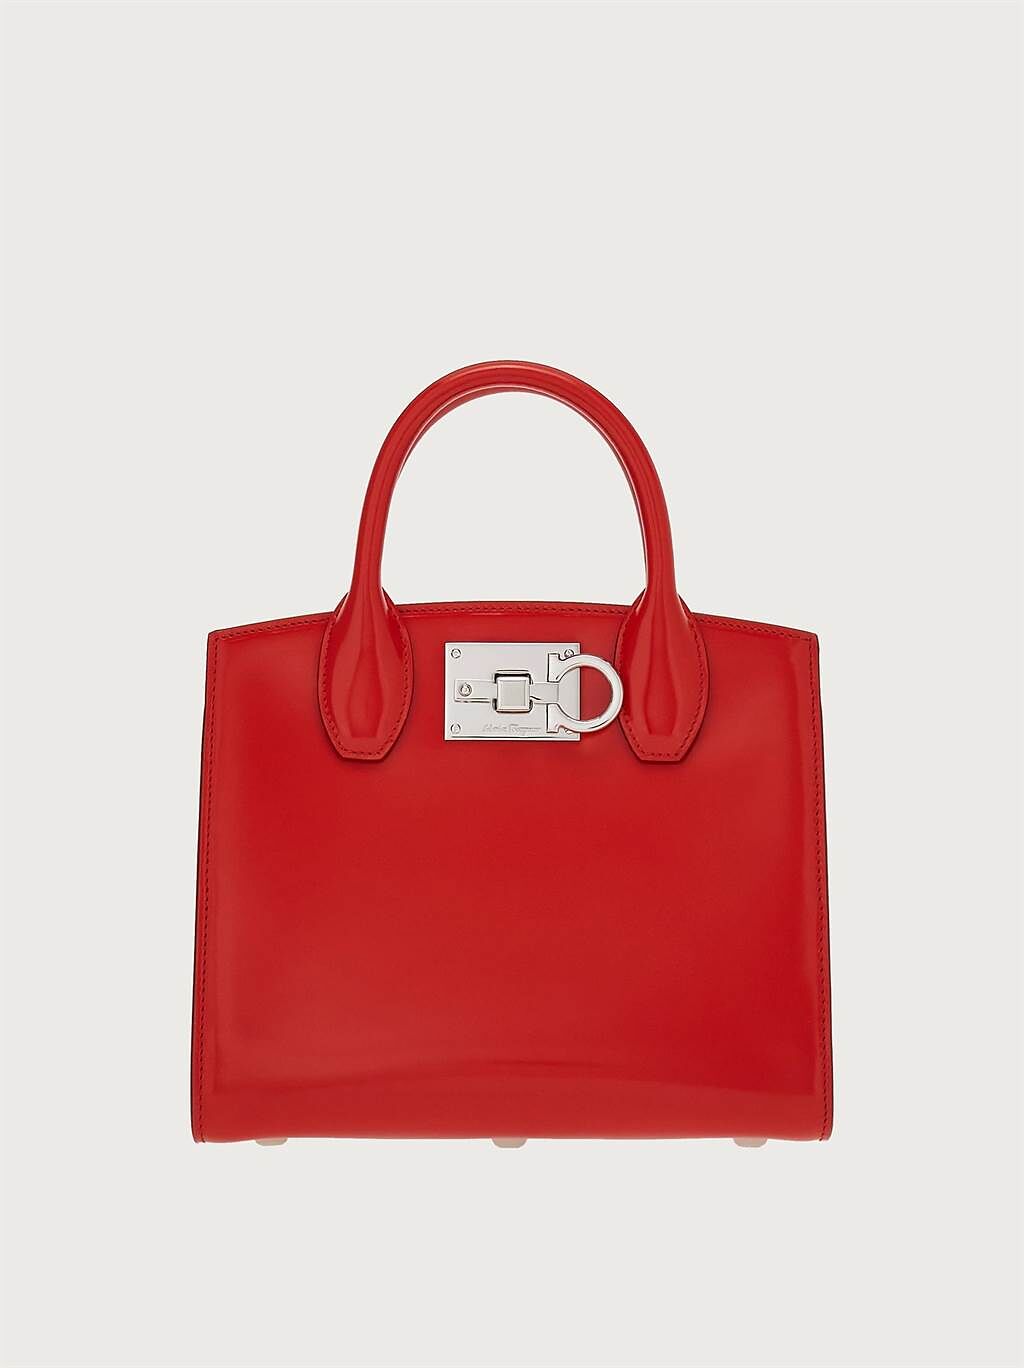 FERRAGAMO  紅色皮革The Studio手提包，7萬8900元。（FERRAGAMO 提供）